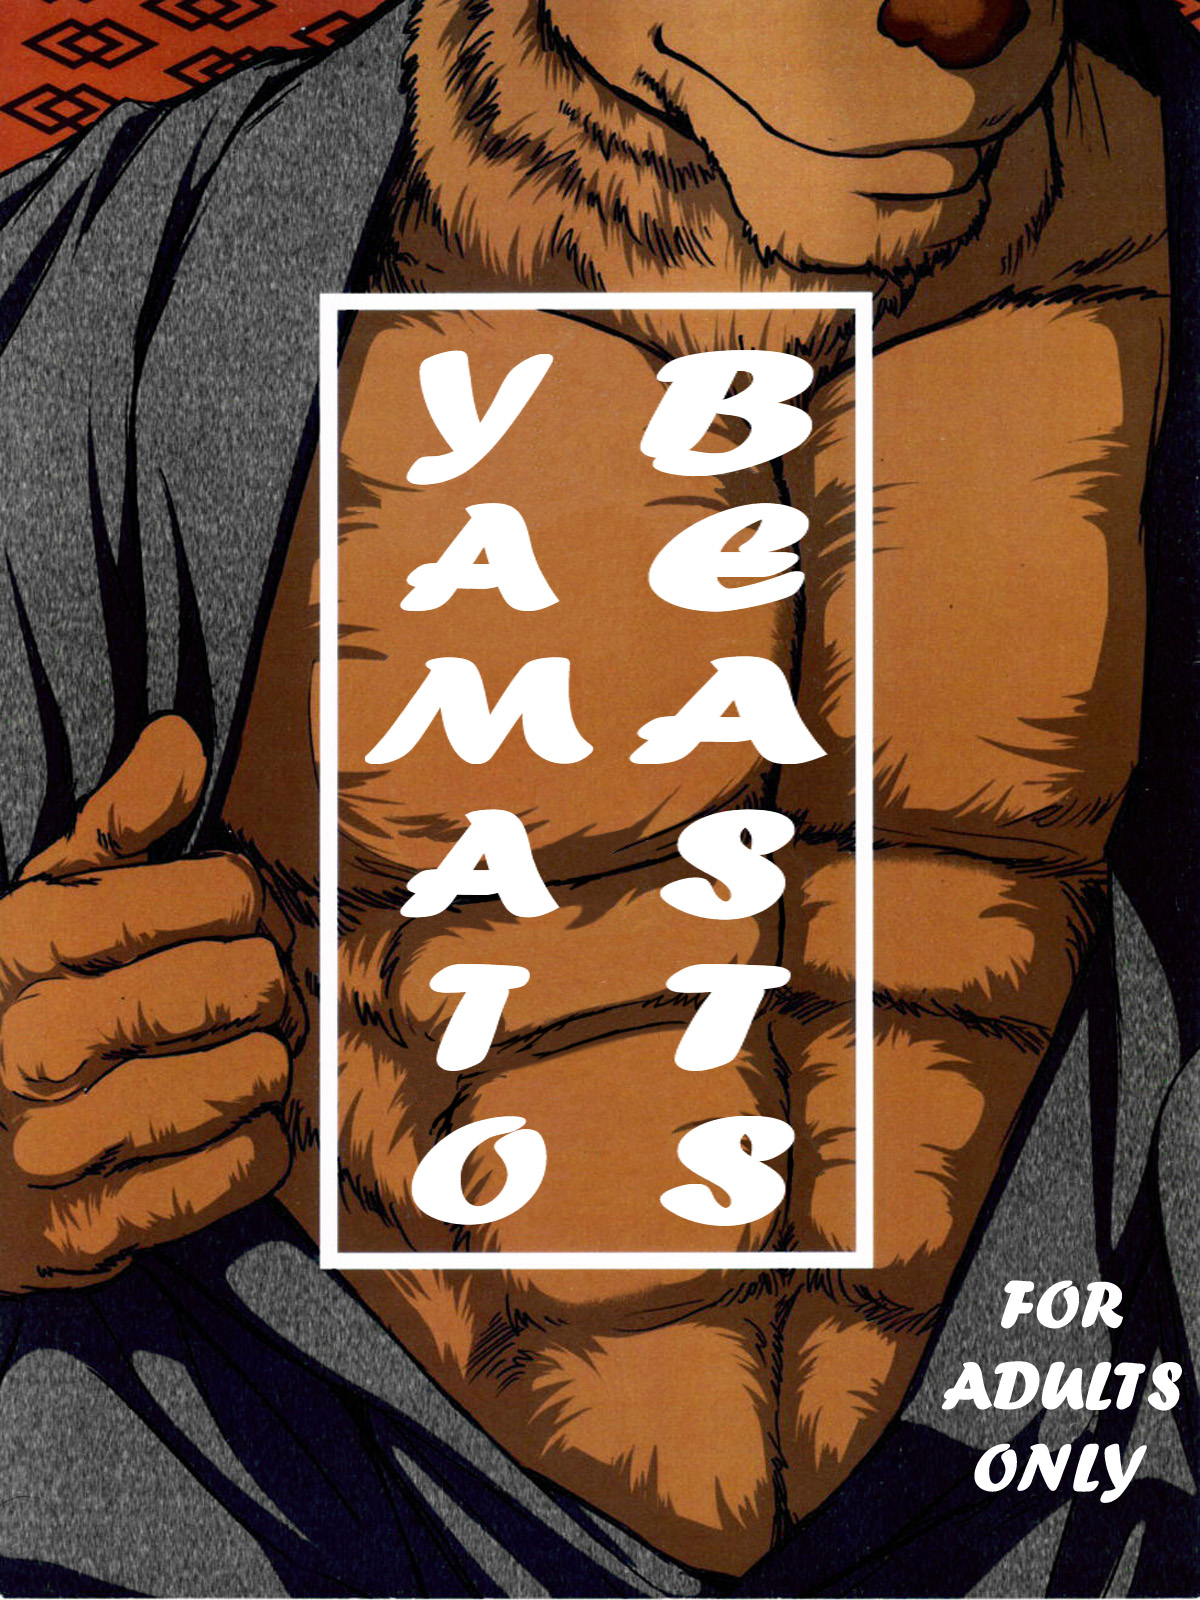 [Jin] Yamato Beasts [English] 